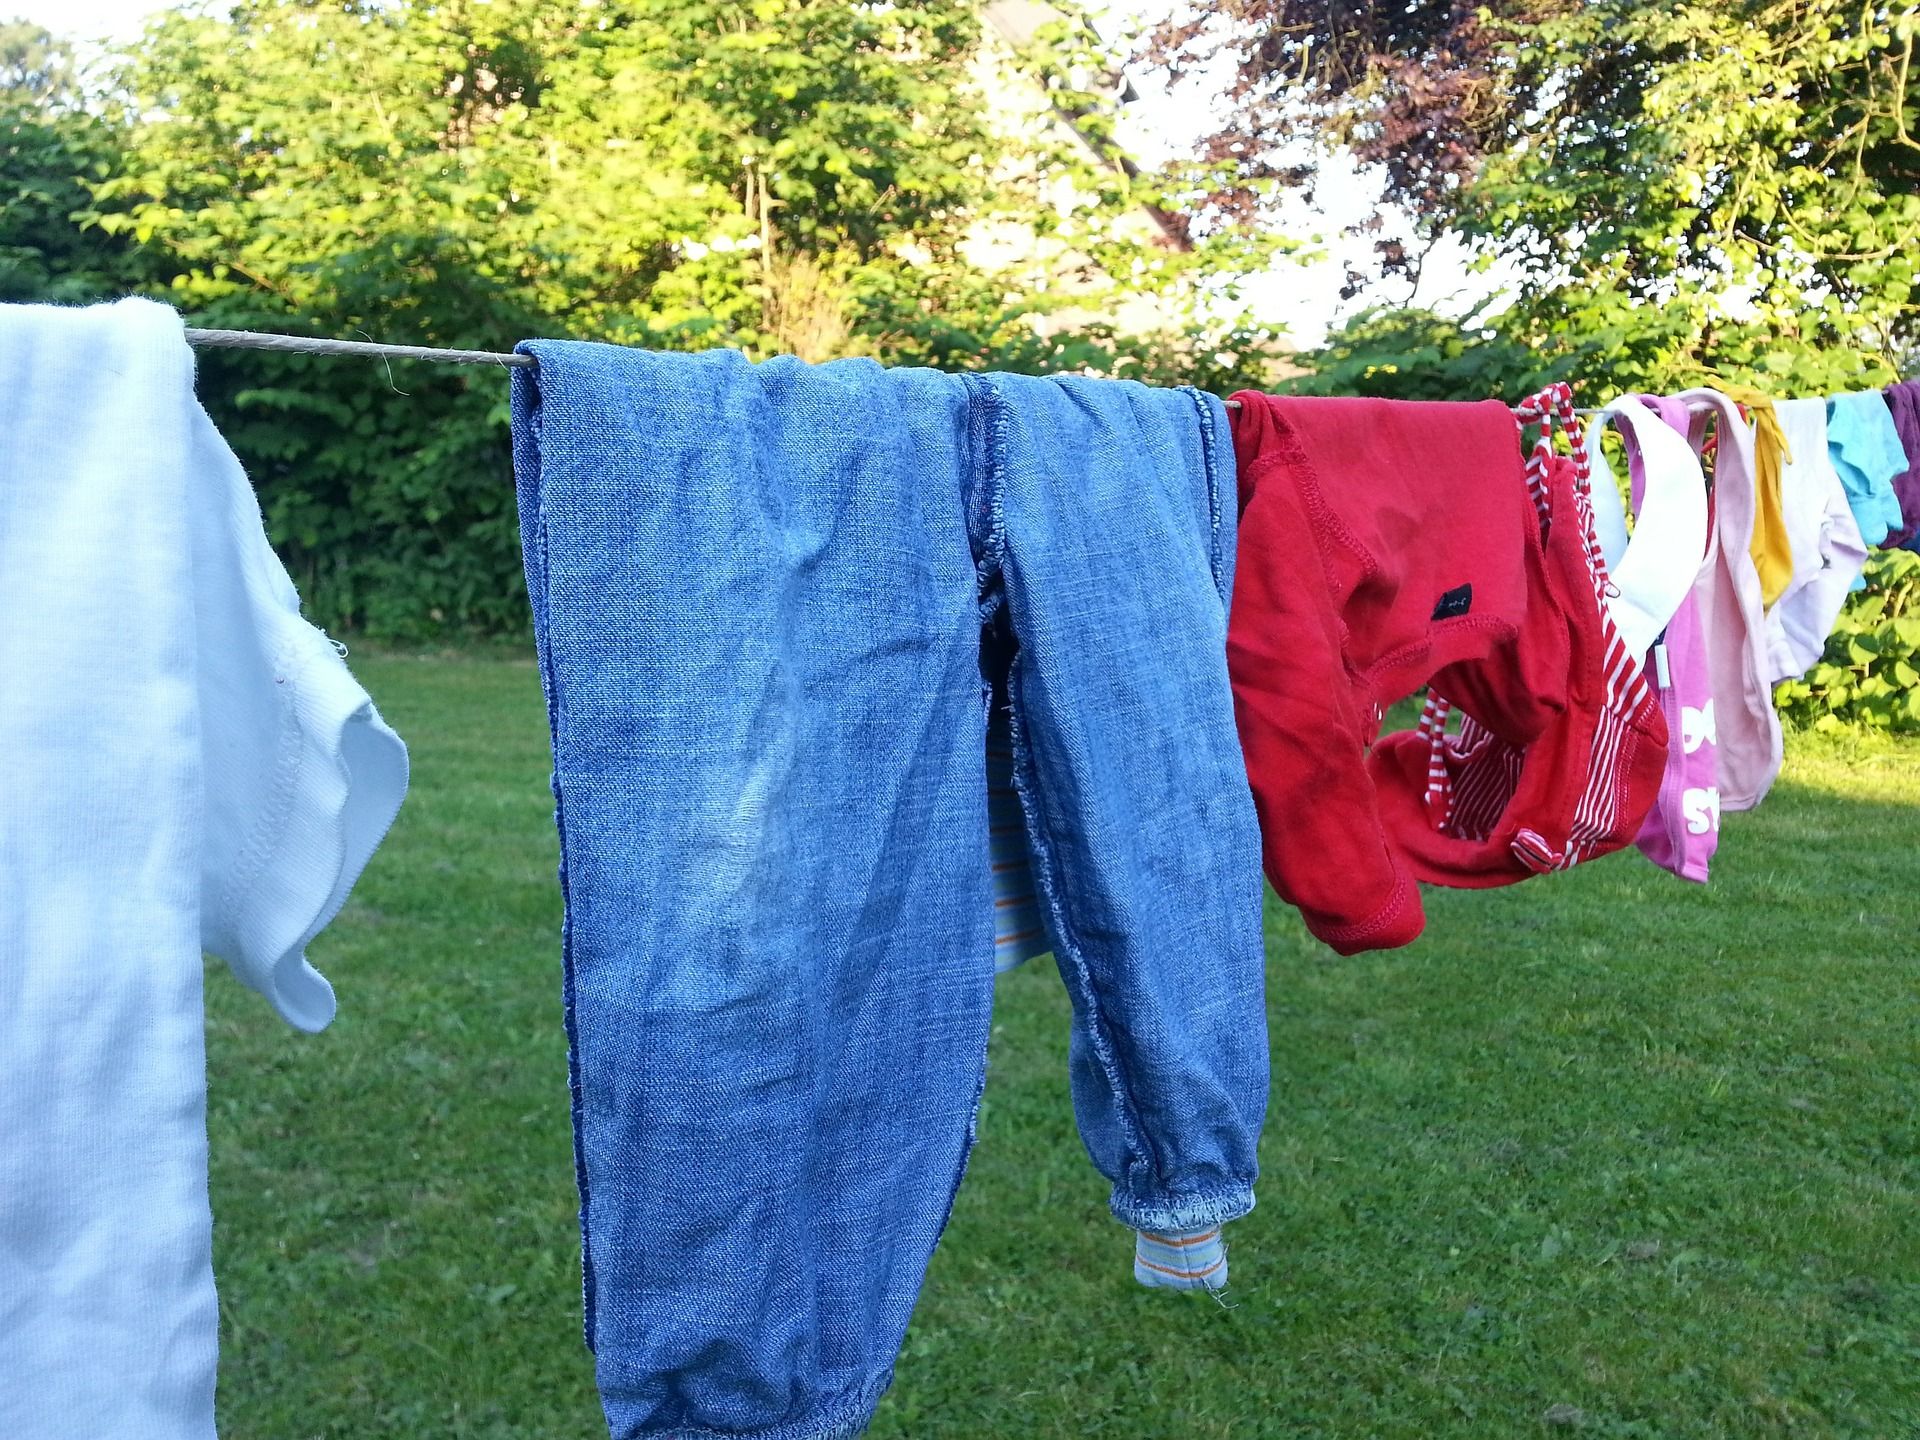 Servicio de lavandería autoservicio en el camping